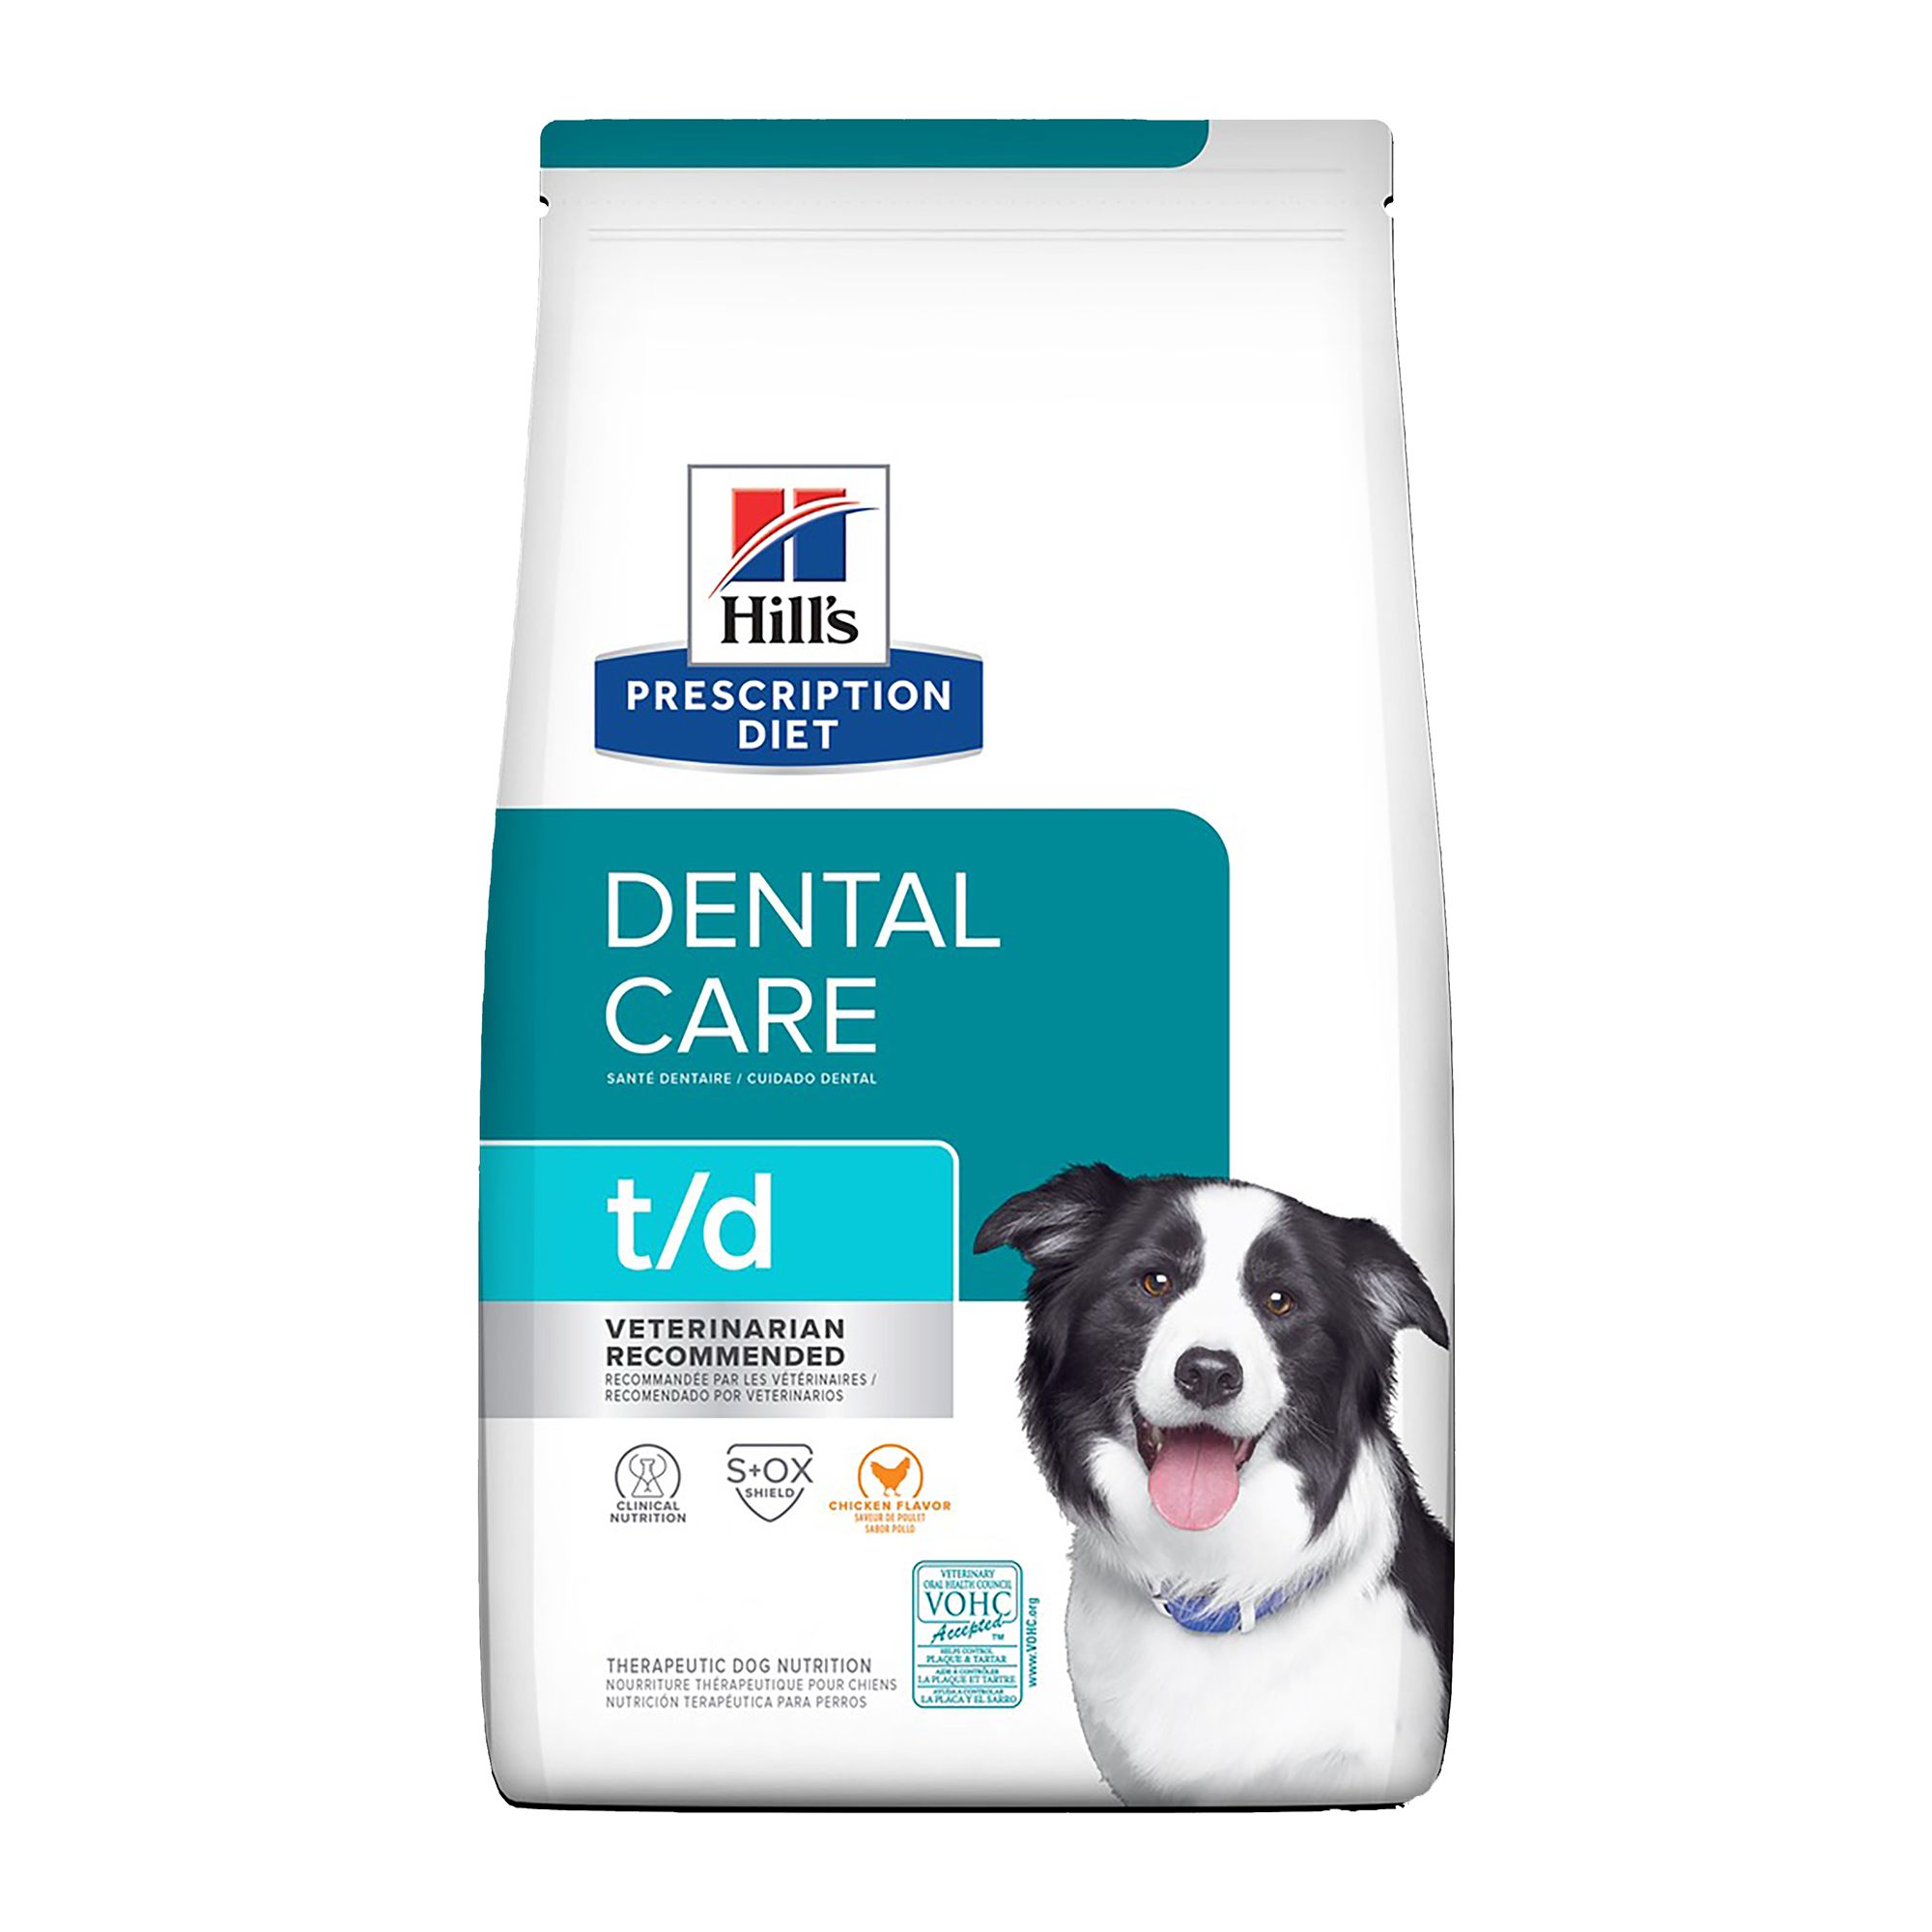 Dental Care Dog Food 